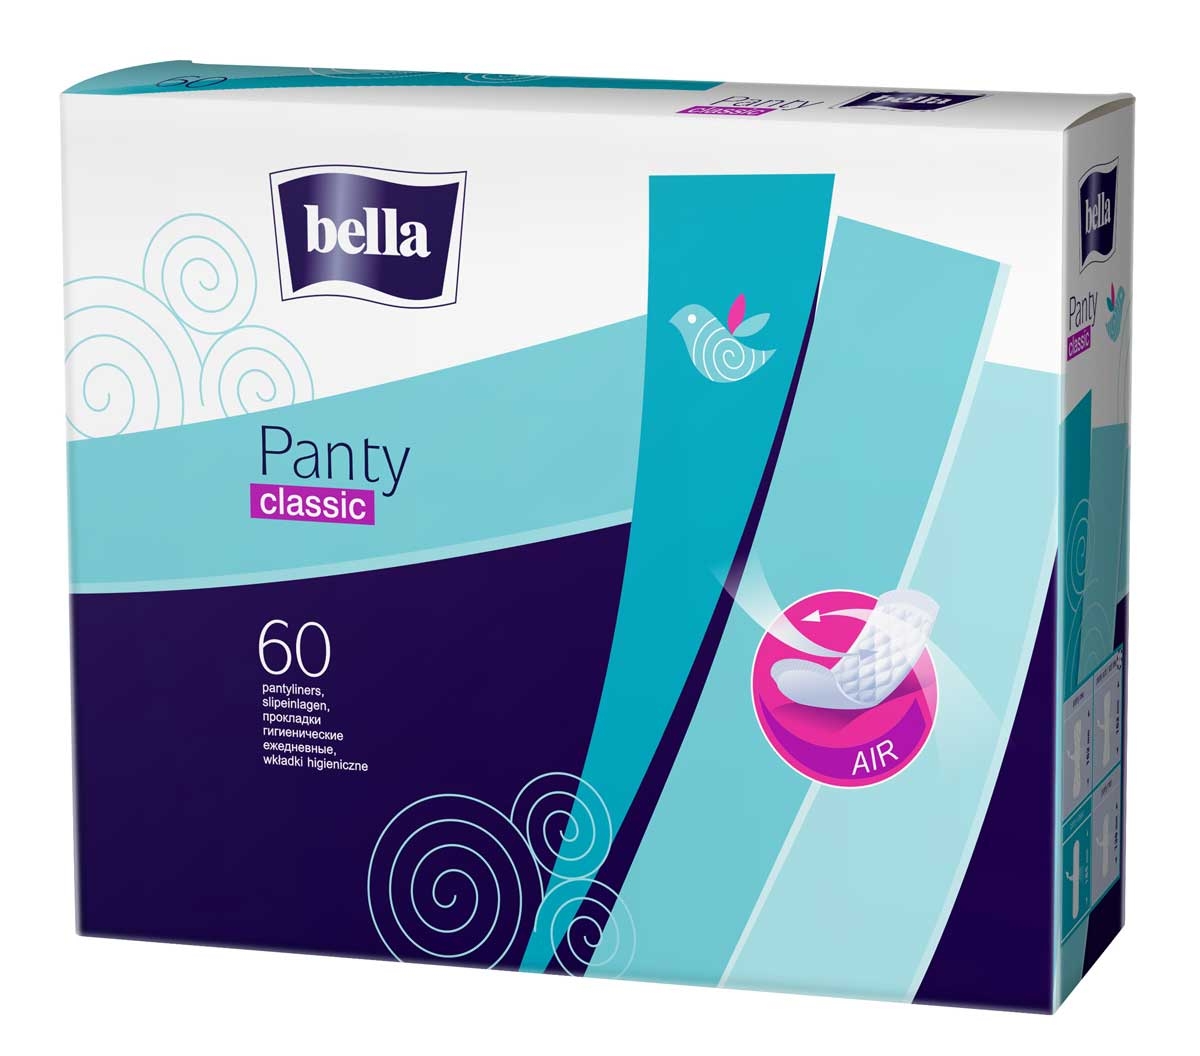 Bella Panty Slipeinlagen "Classic" (ohne Duft) - 60 Stück Packung